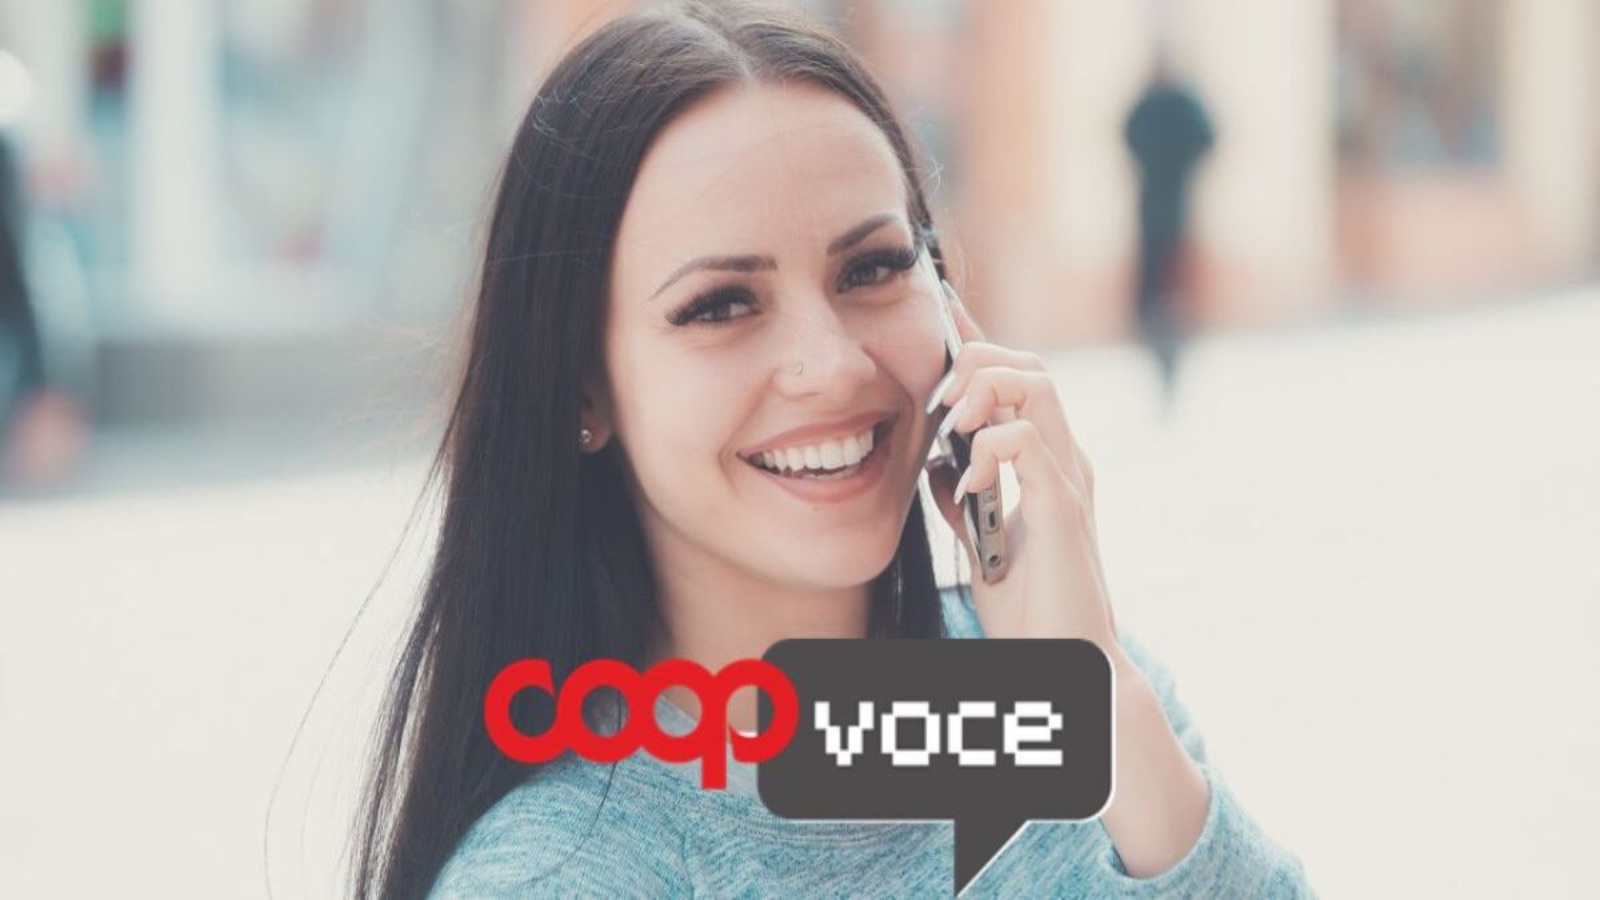 CoopVoce con la EVO 200 devasta Vodafone e Iliad, prezzo ASSURDO